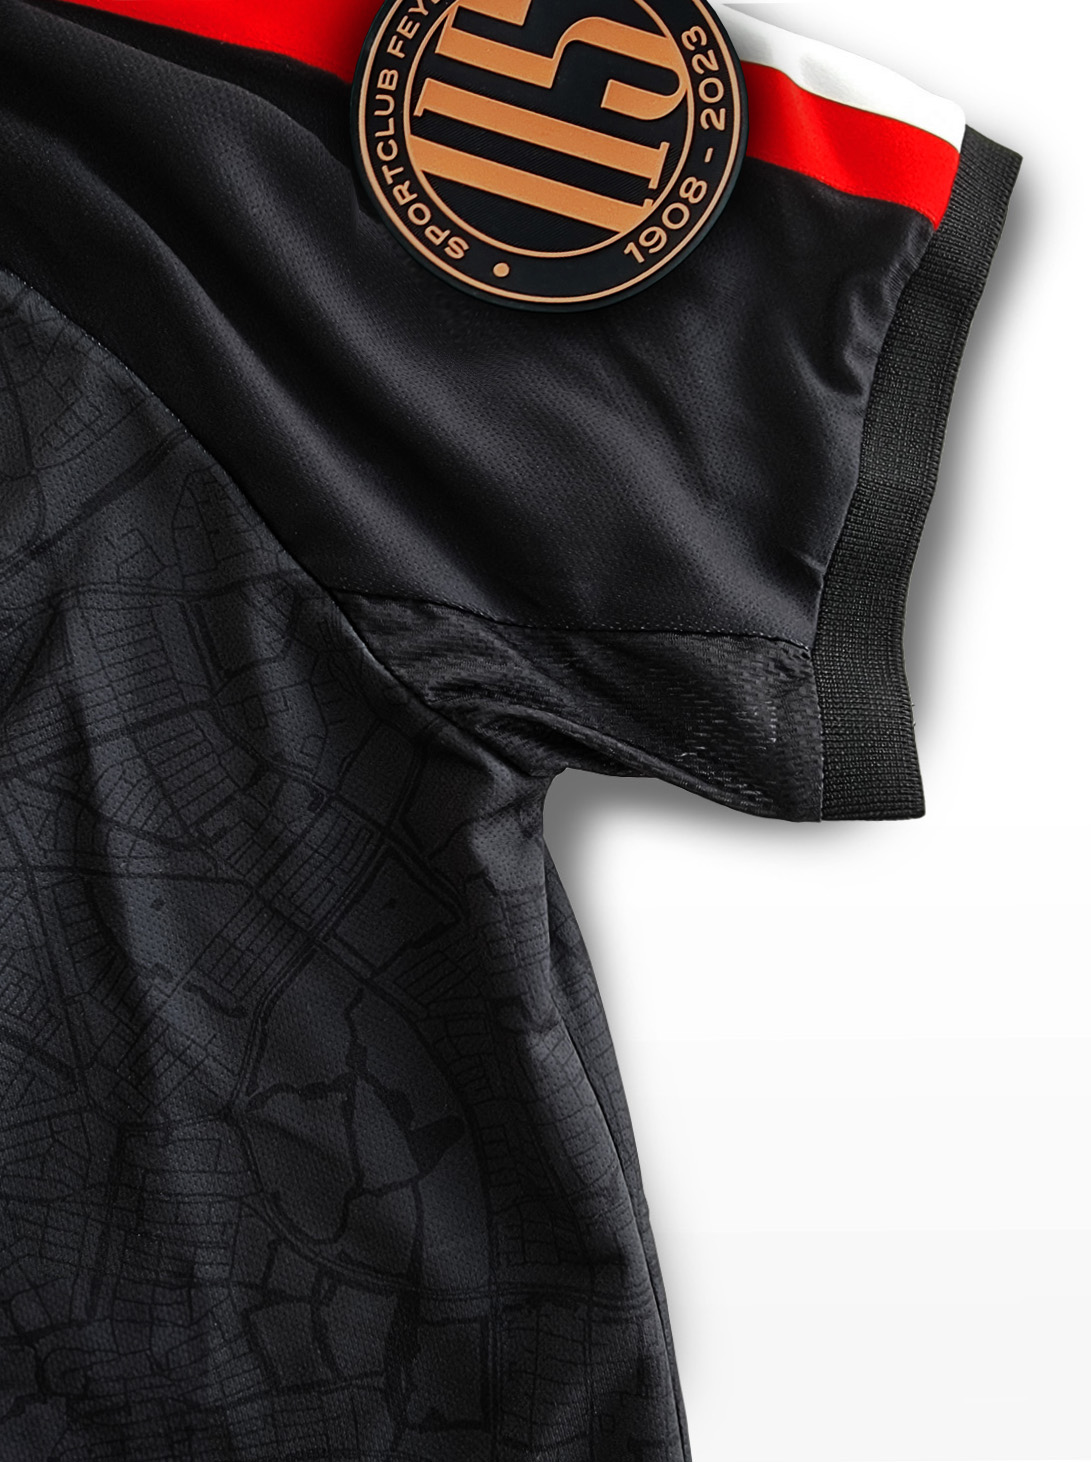 FRFC Sportshirt 2.0, Thuisshirt - 2022 - 2024 - Mouw Detail (zonder sponsor) - 115 jaar